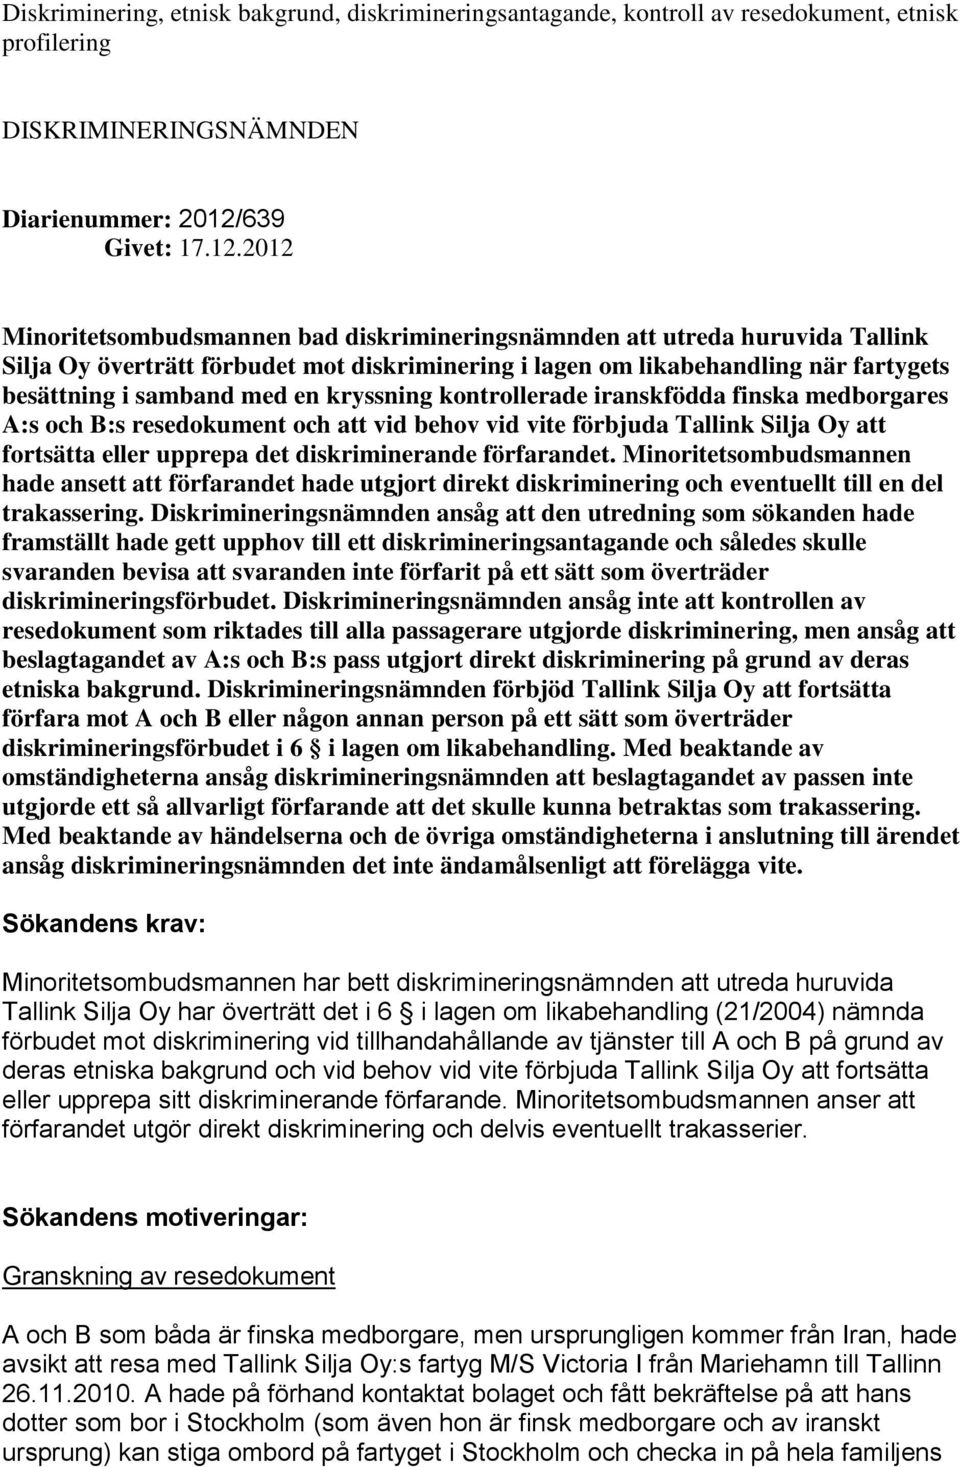 2012 Minoritetsombudsmannen bad diskrimineringsnämnden att utreda huruvida Tallink Silja Oy överträtt förbudet mot diskriminering i lagen om likabehandling när fartygets besättning i samband med en